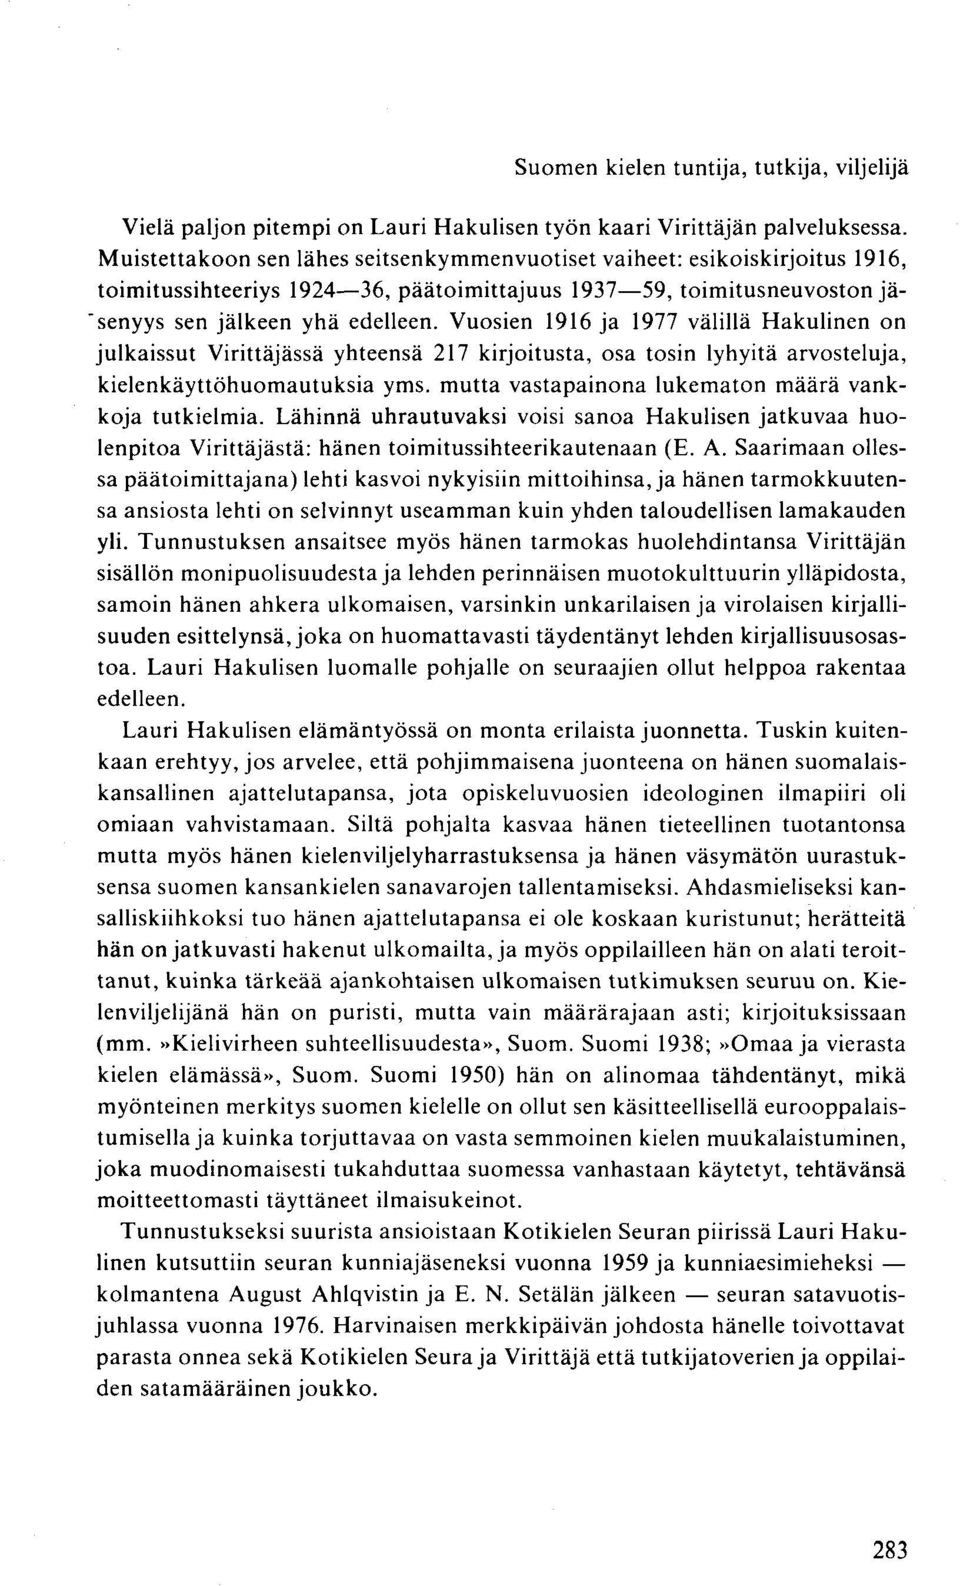 Vuosien 1916 ja 1977 välillä Hakulinen on julkaissut Virittäjässä yhteensä 217 kirjoitusta, osa tosin lyhyitä arvosteluja, kielenkäyttöhuomautuksia yms.